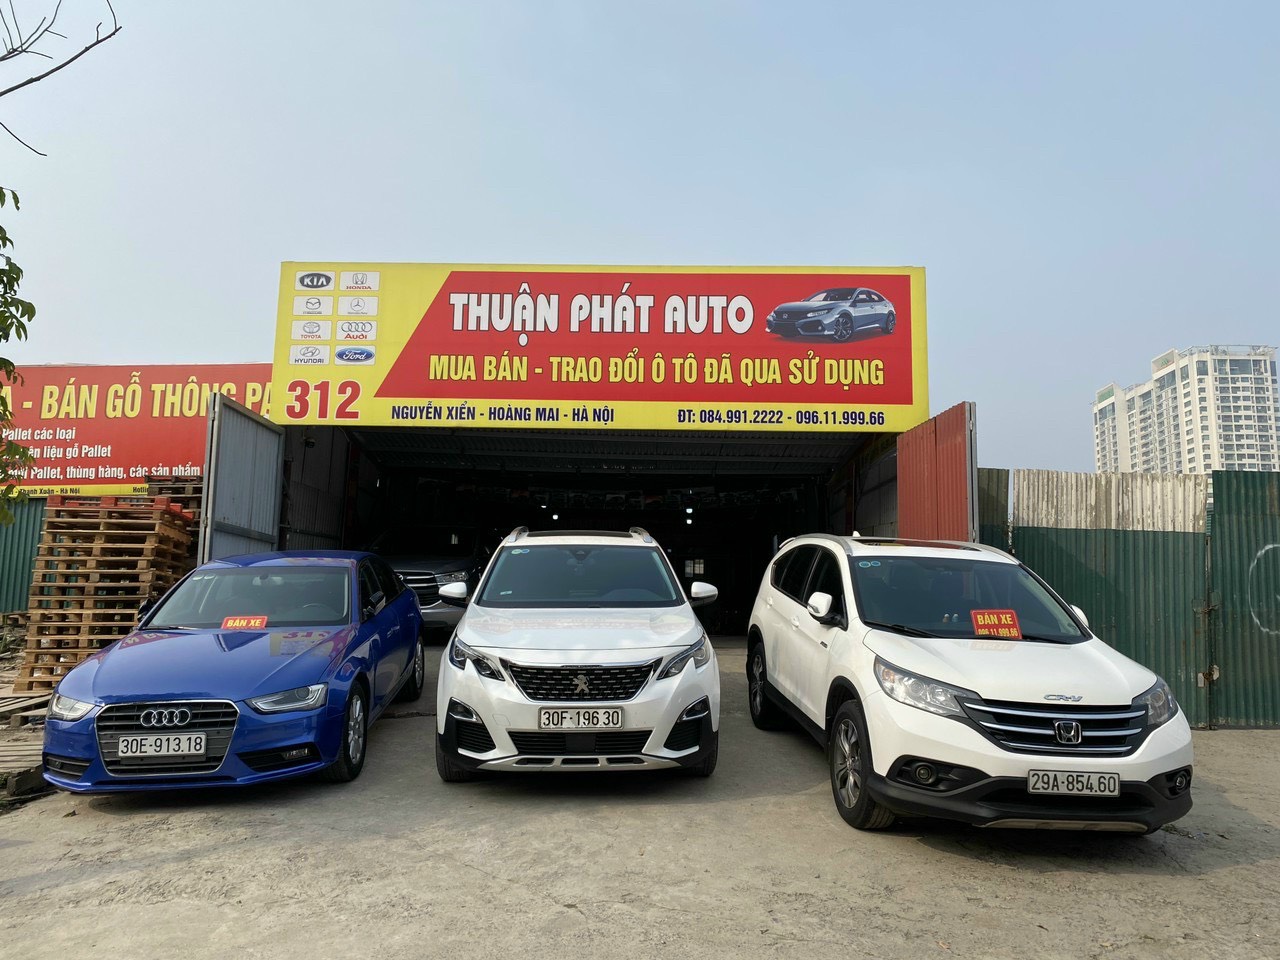 Thuận Phát Auto